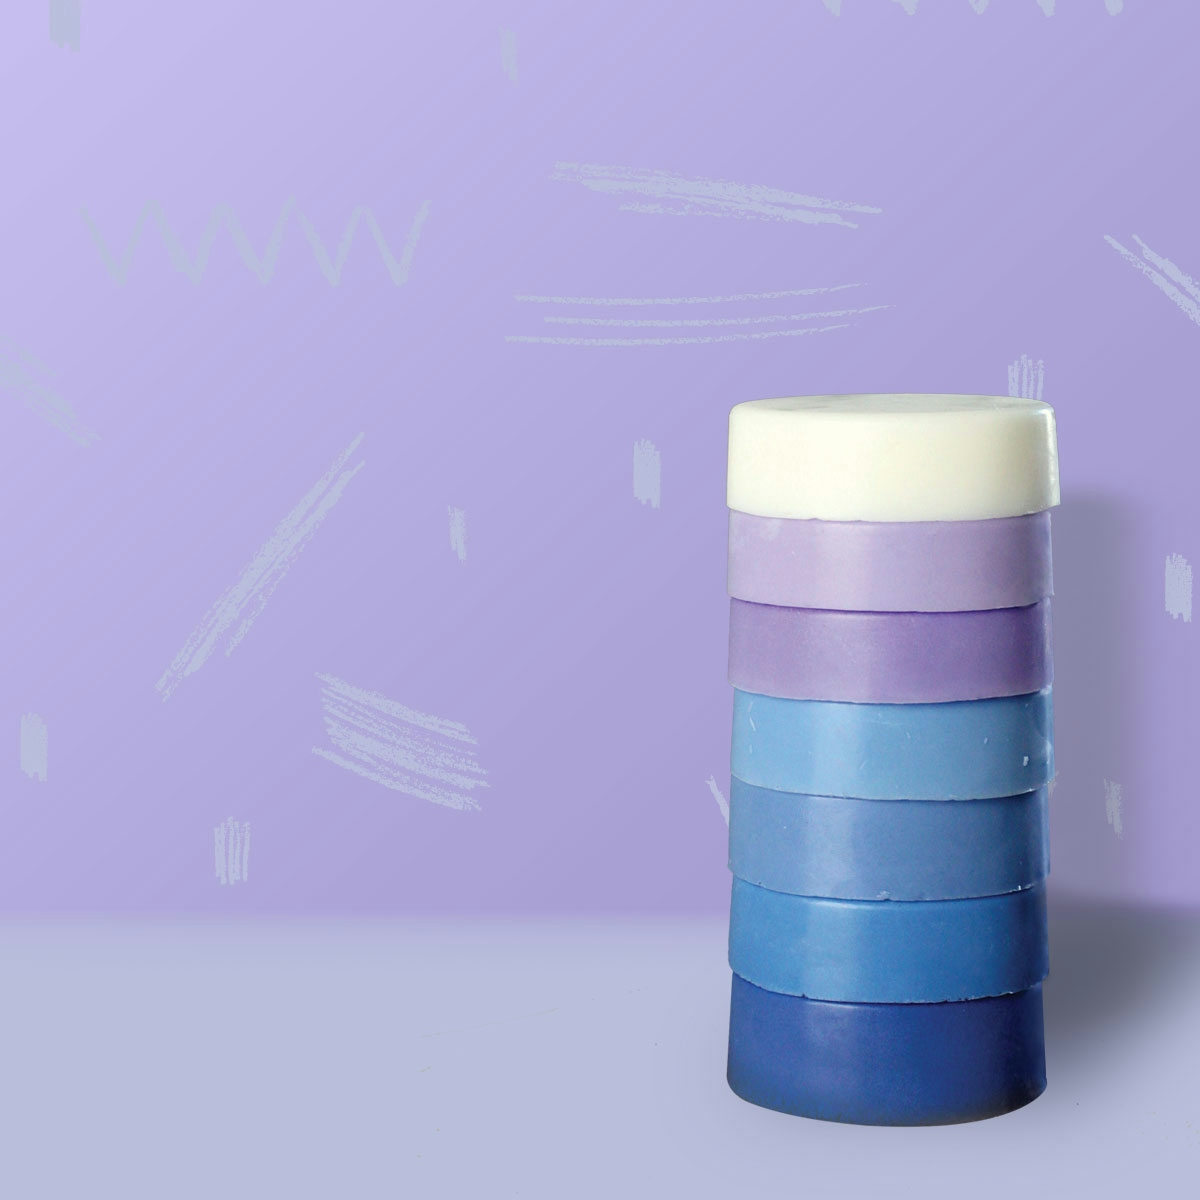 Bubz breastmilk soap stack